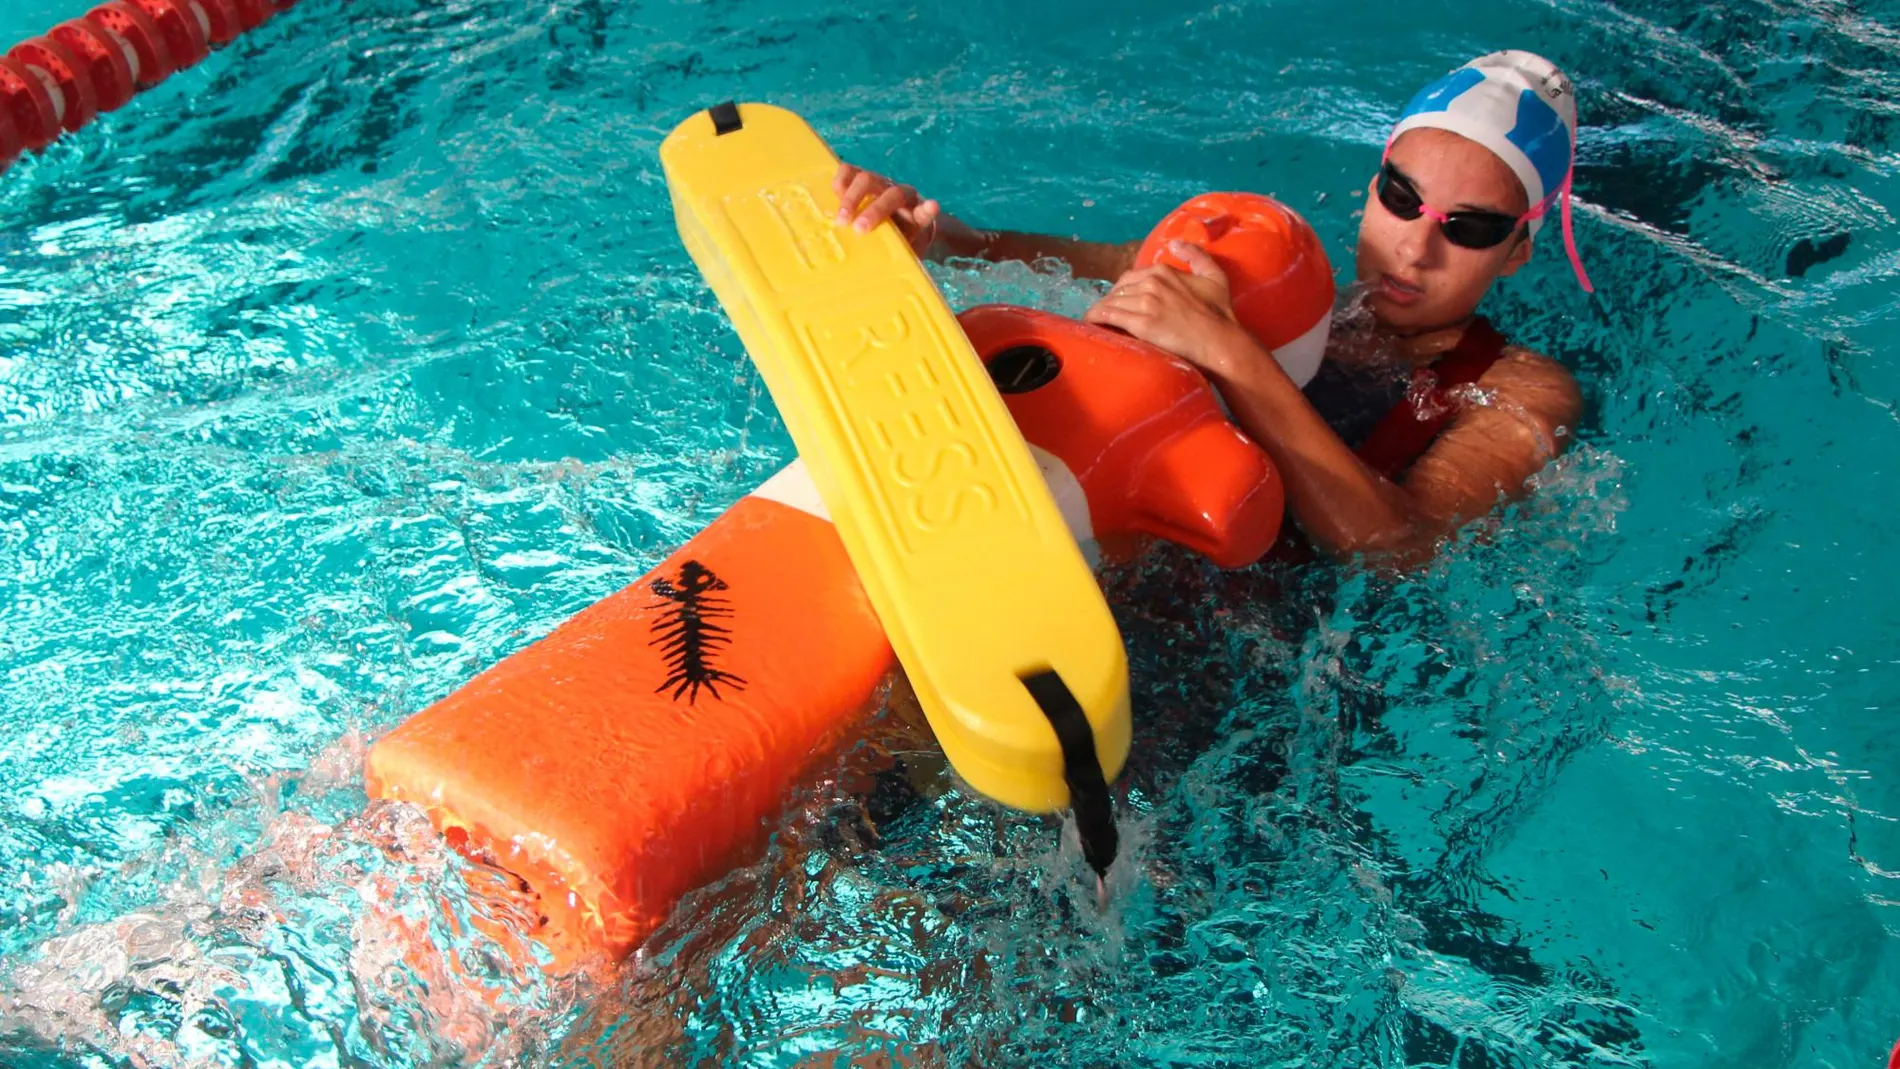 Deportista durante un ejercicio de socorrismo en piscina en el que remolca hasta la orilla a un maniquí estanco de unos 70 kilos de peso